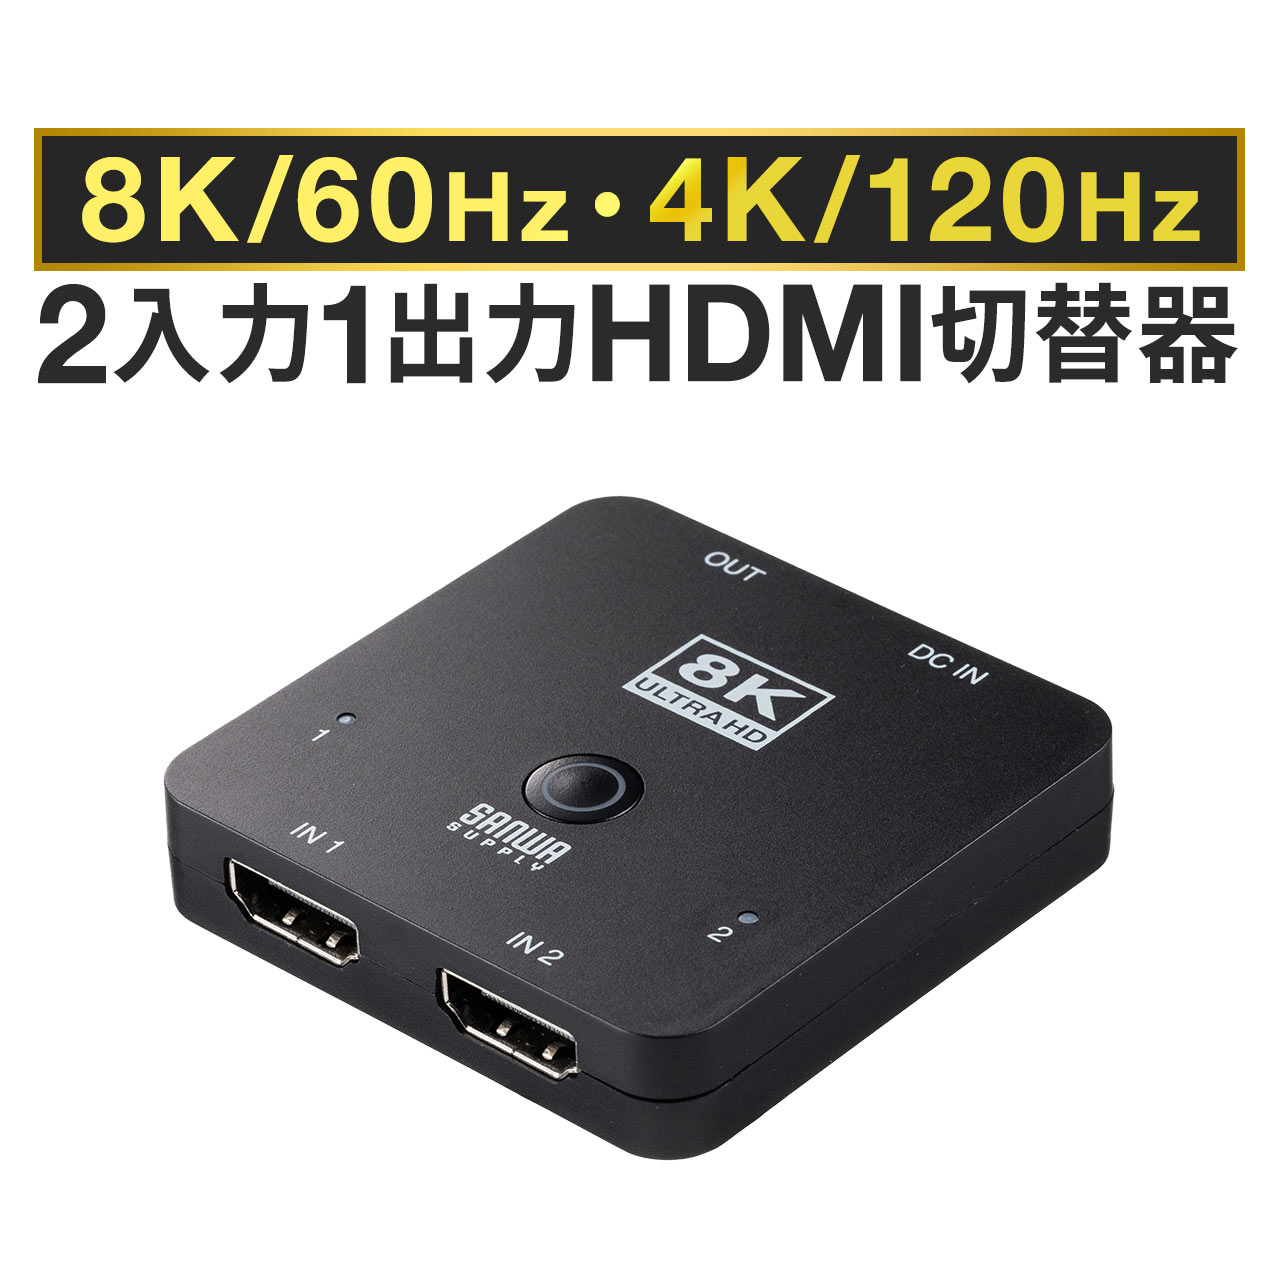 楽天市場】パソコン切替器 hdmi HDMI 2台 4K 60Hz KVMスイッチ USBキーボード USBマウス スピーカー マイク Windows  macOS 在宅勤務 テレワーク : サンワダイレクト楽天市場店